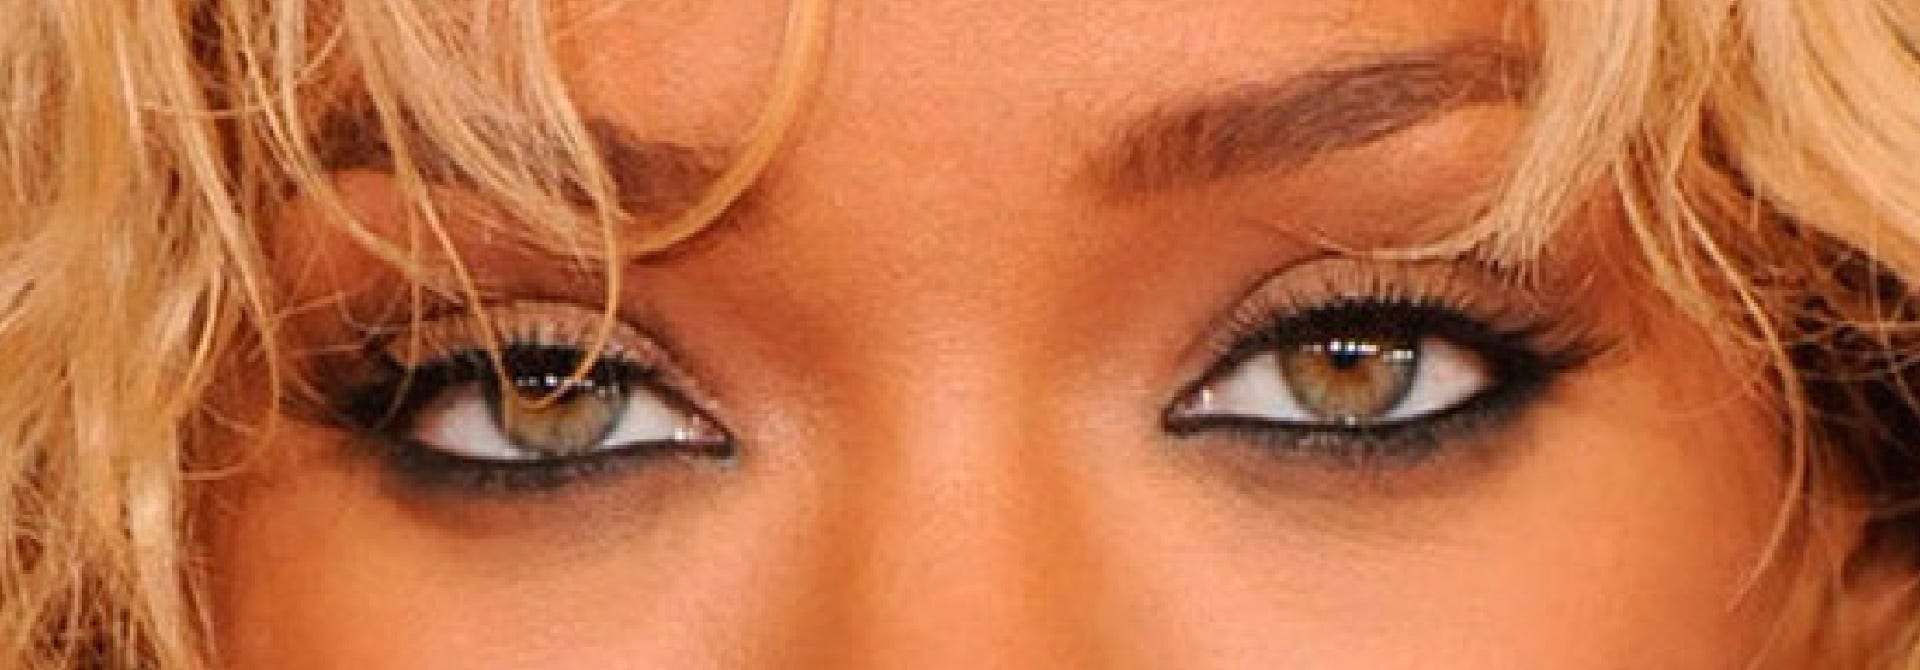 rihanna-natural-green-eye-contacts-color-close-up-pic-photo